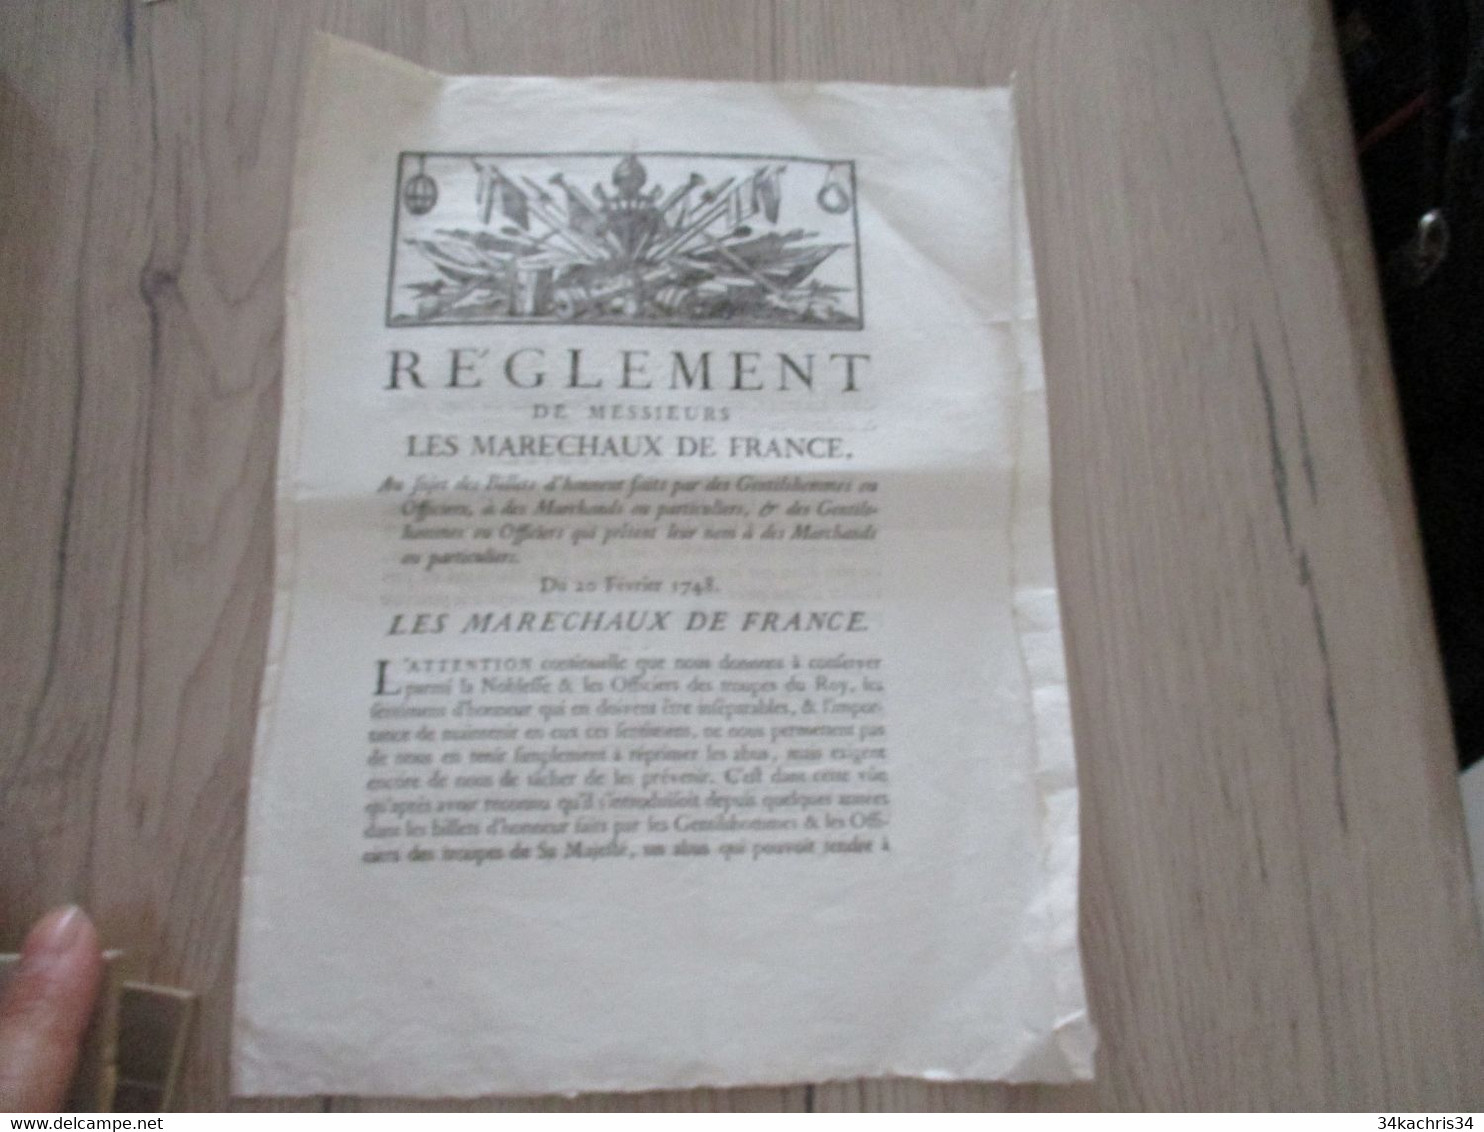 Règlement De Messieurs Les Maréchaux De France  Aux Sujet Des Billets D'Honneur... 20/02/1748 - Gesetze & Erlasse